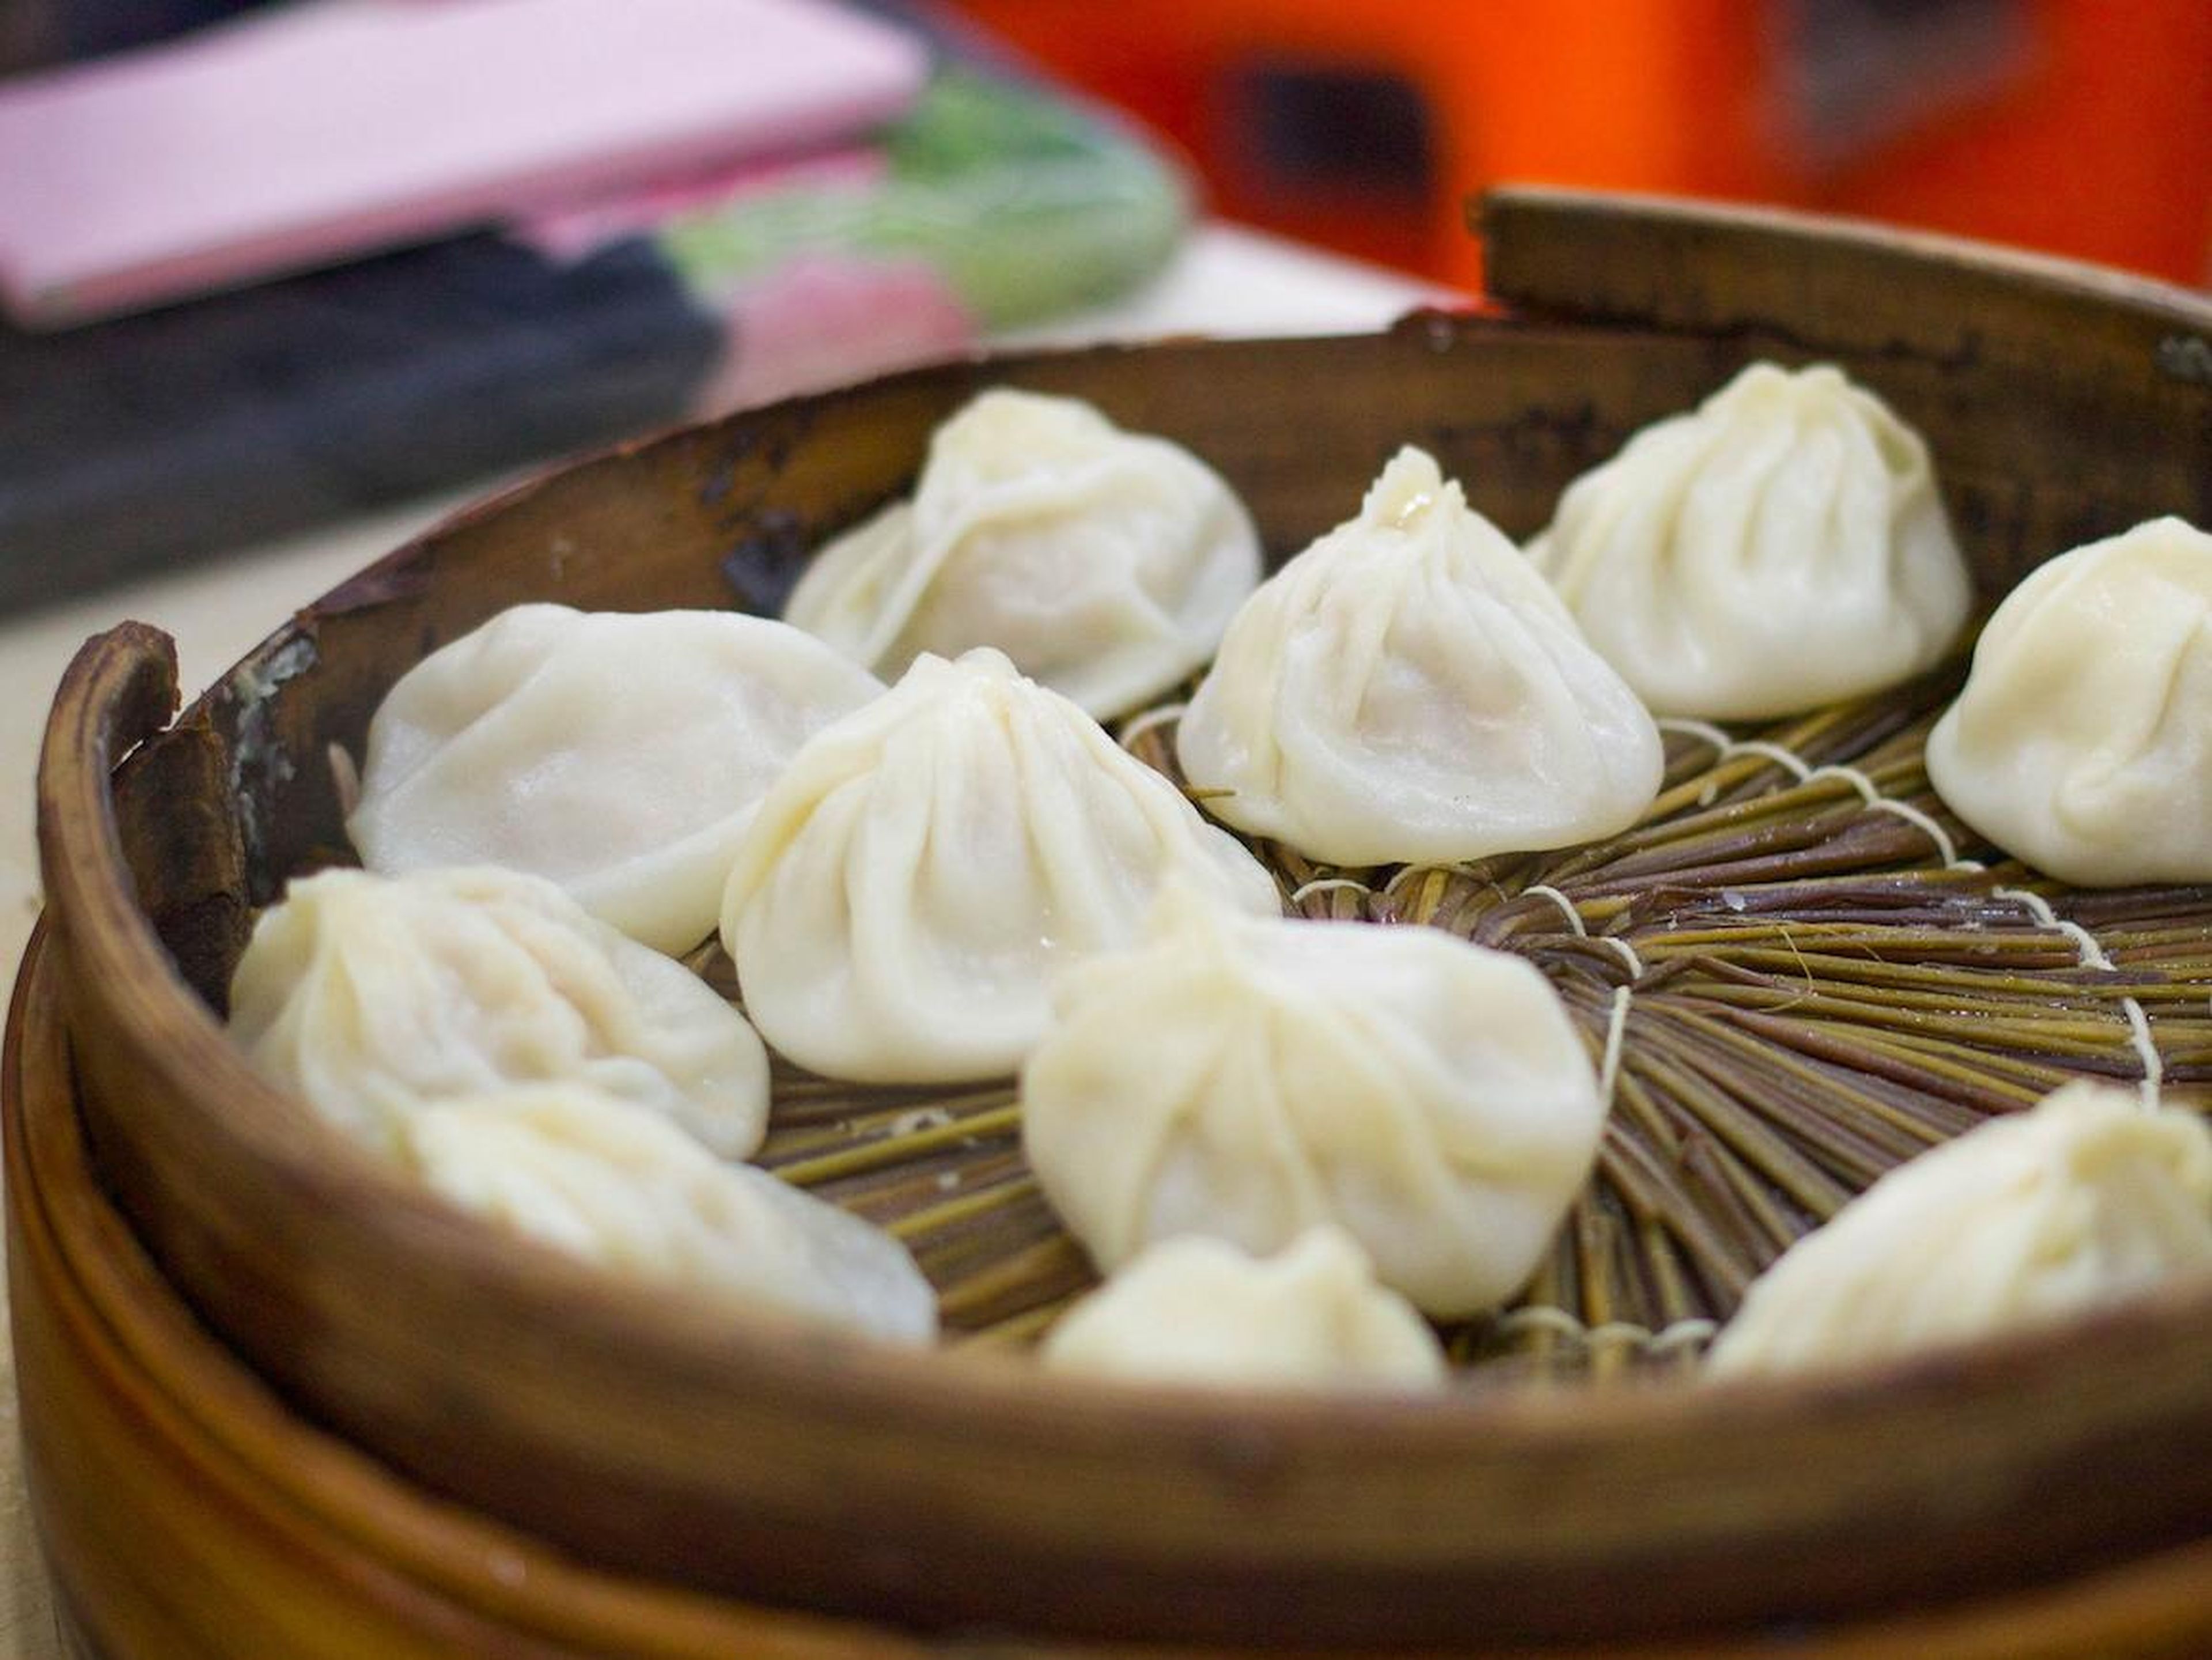 Puedes encontrar una variedad de empanadillas al vapor (dumplings) en diferentes menús de toda la ciudad.